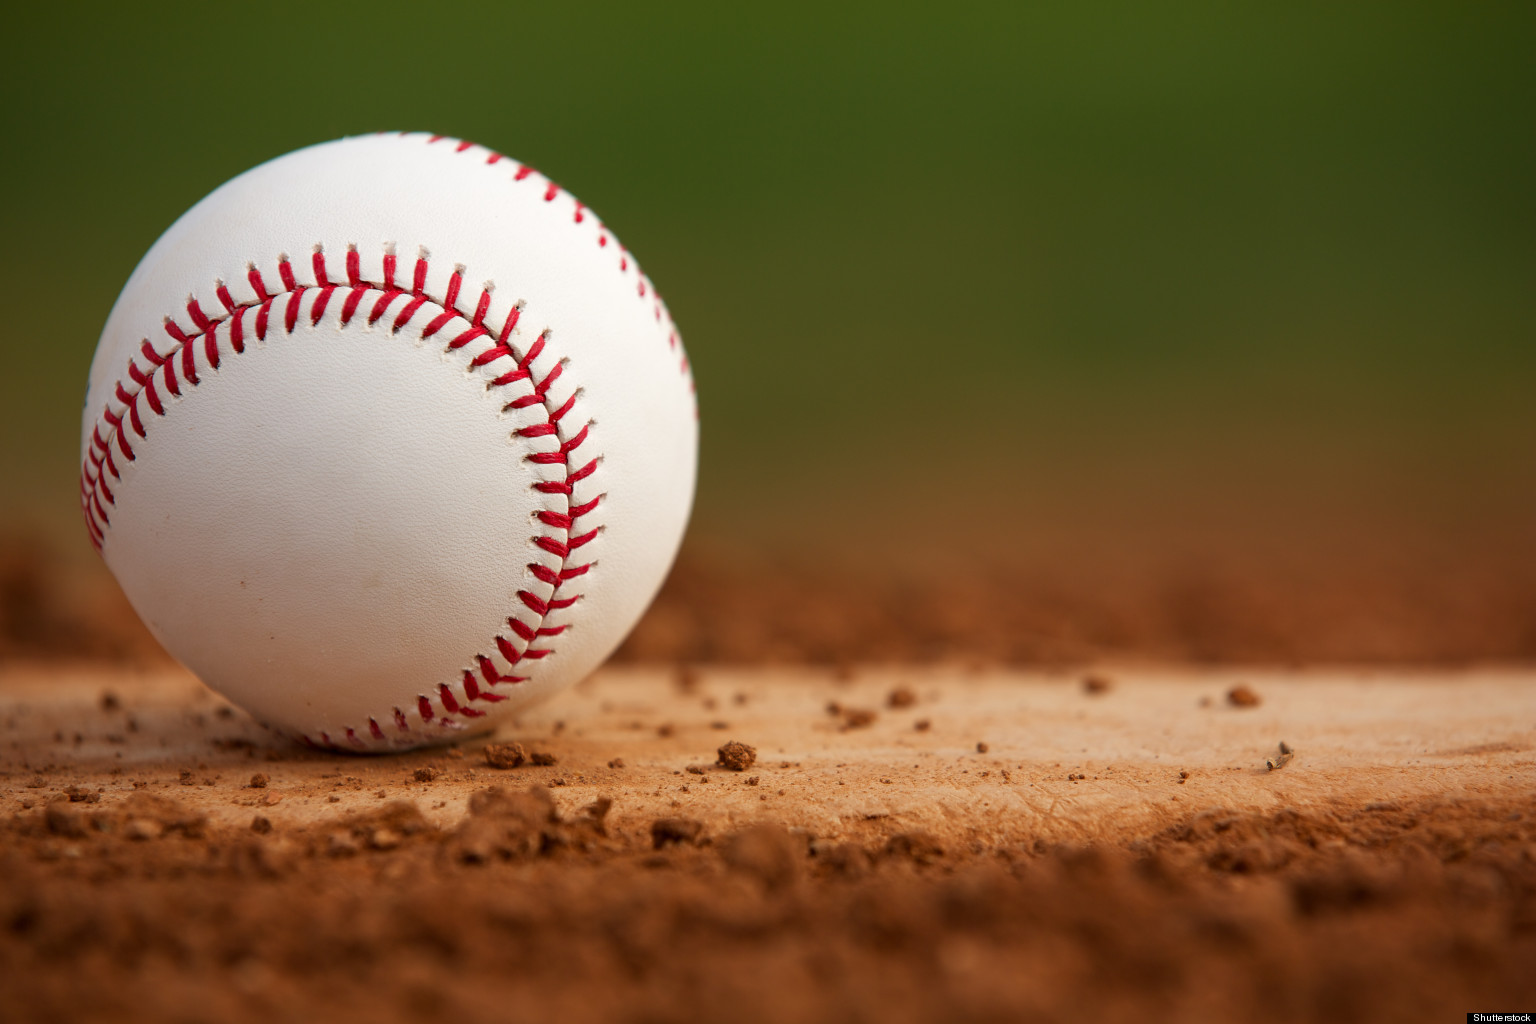 beisbol wallpaper,baseball,bat and ball games,ball,team sport,ball game